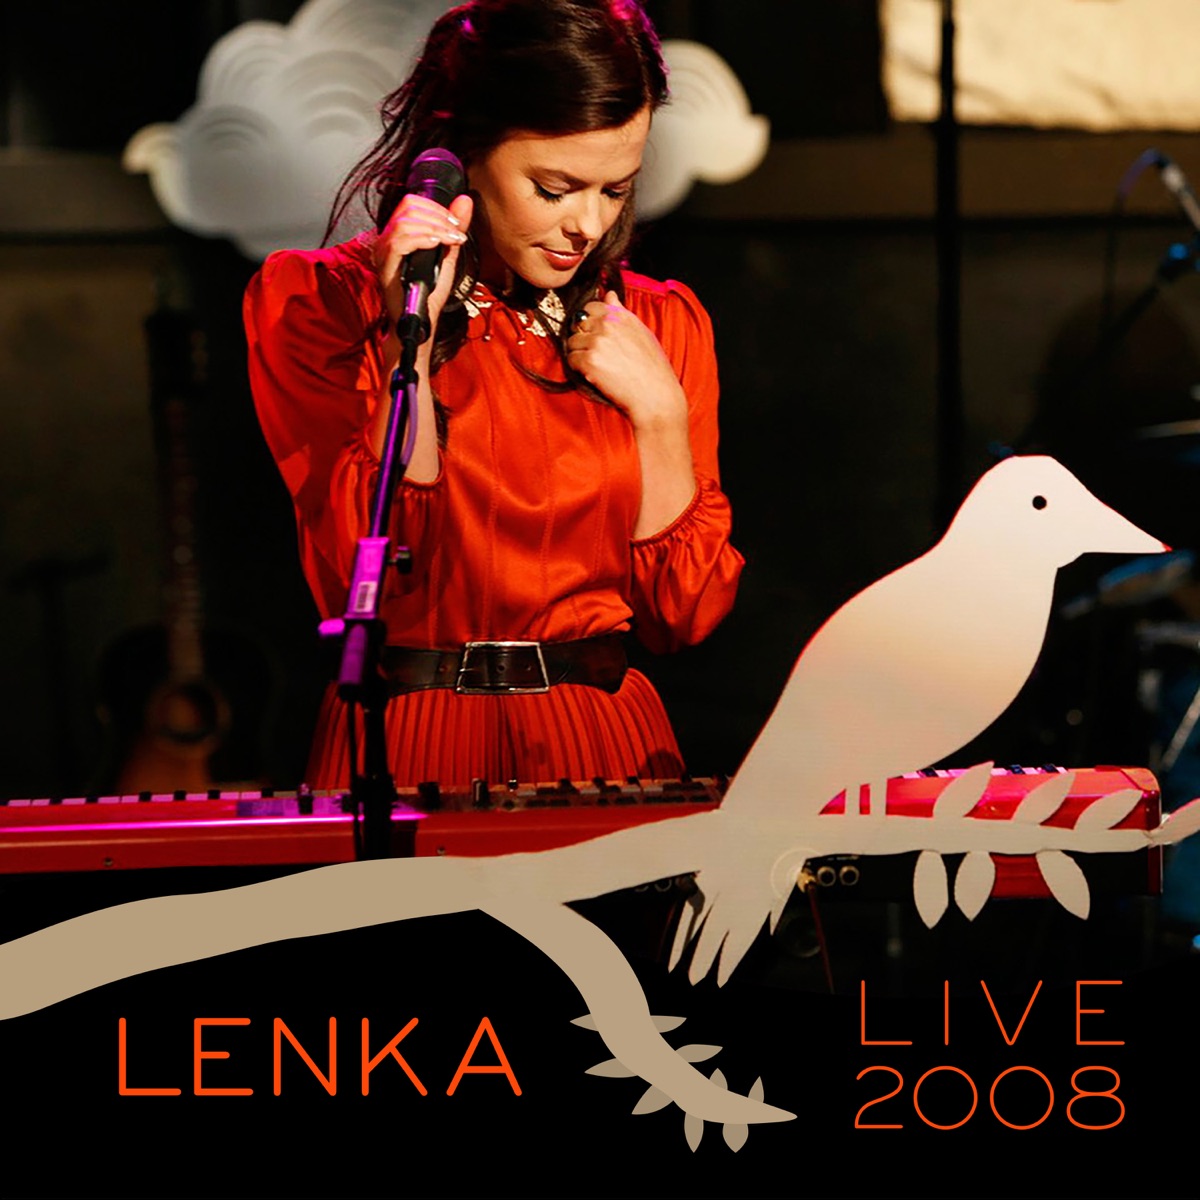 Lenka (Expanded Edition) by Lenka on Apple Music